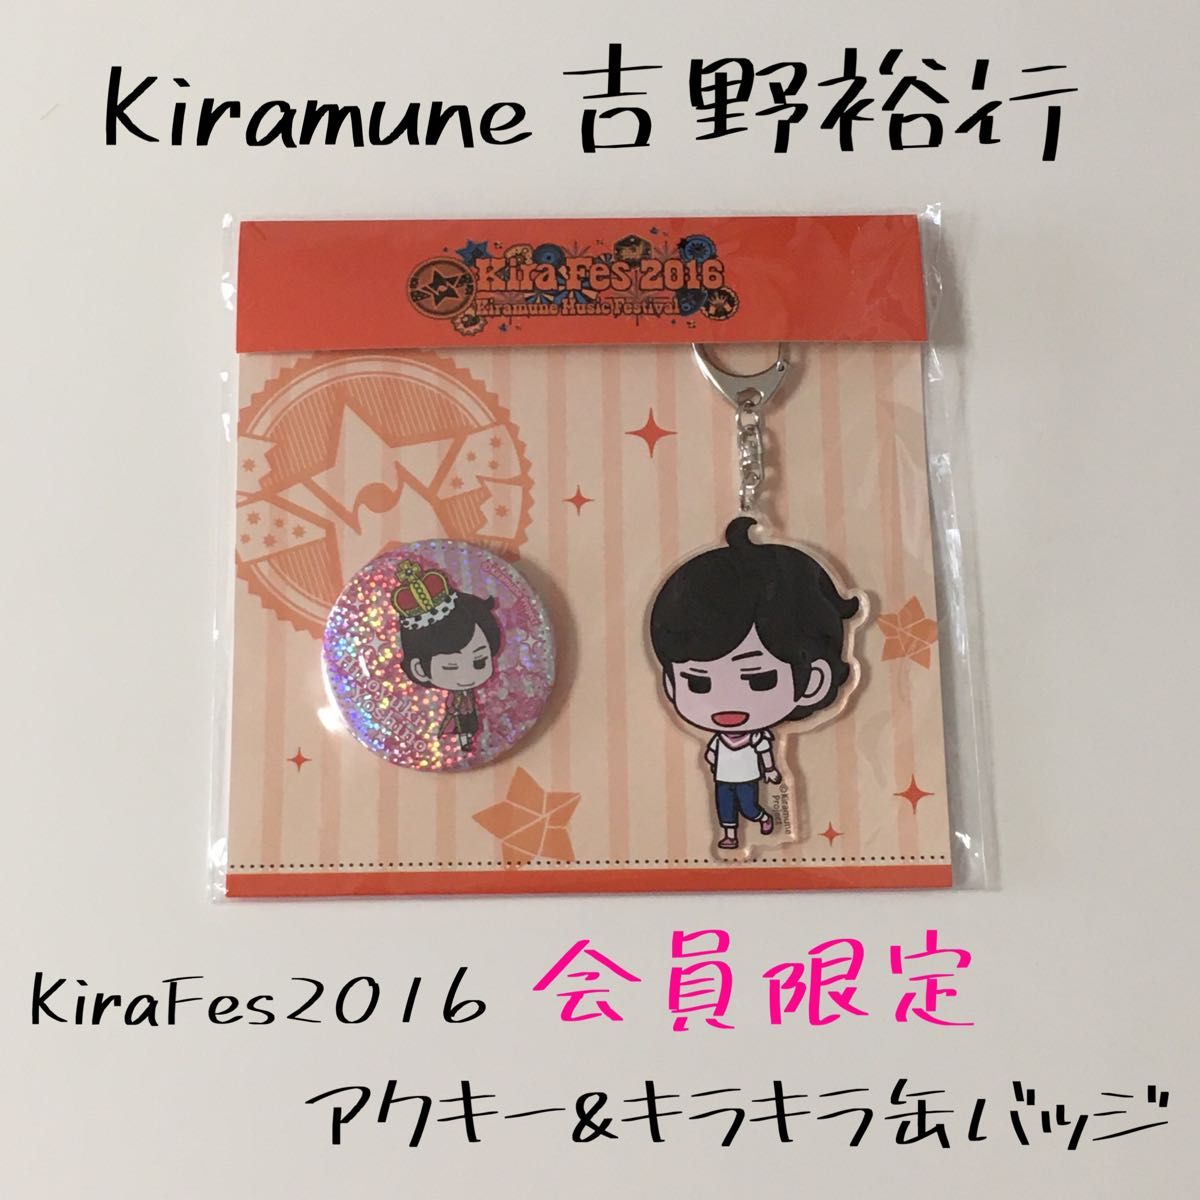 キラミューン Kiramune 吉野裕行 キラフェス KiraFes 2016 限定 グッズ 缶バッジ 缶バッチ アクキー 